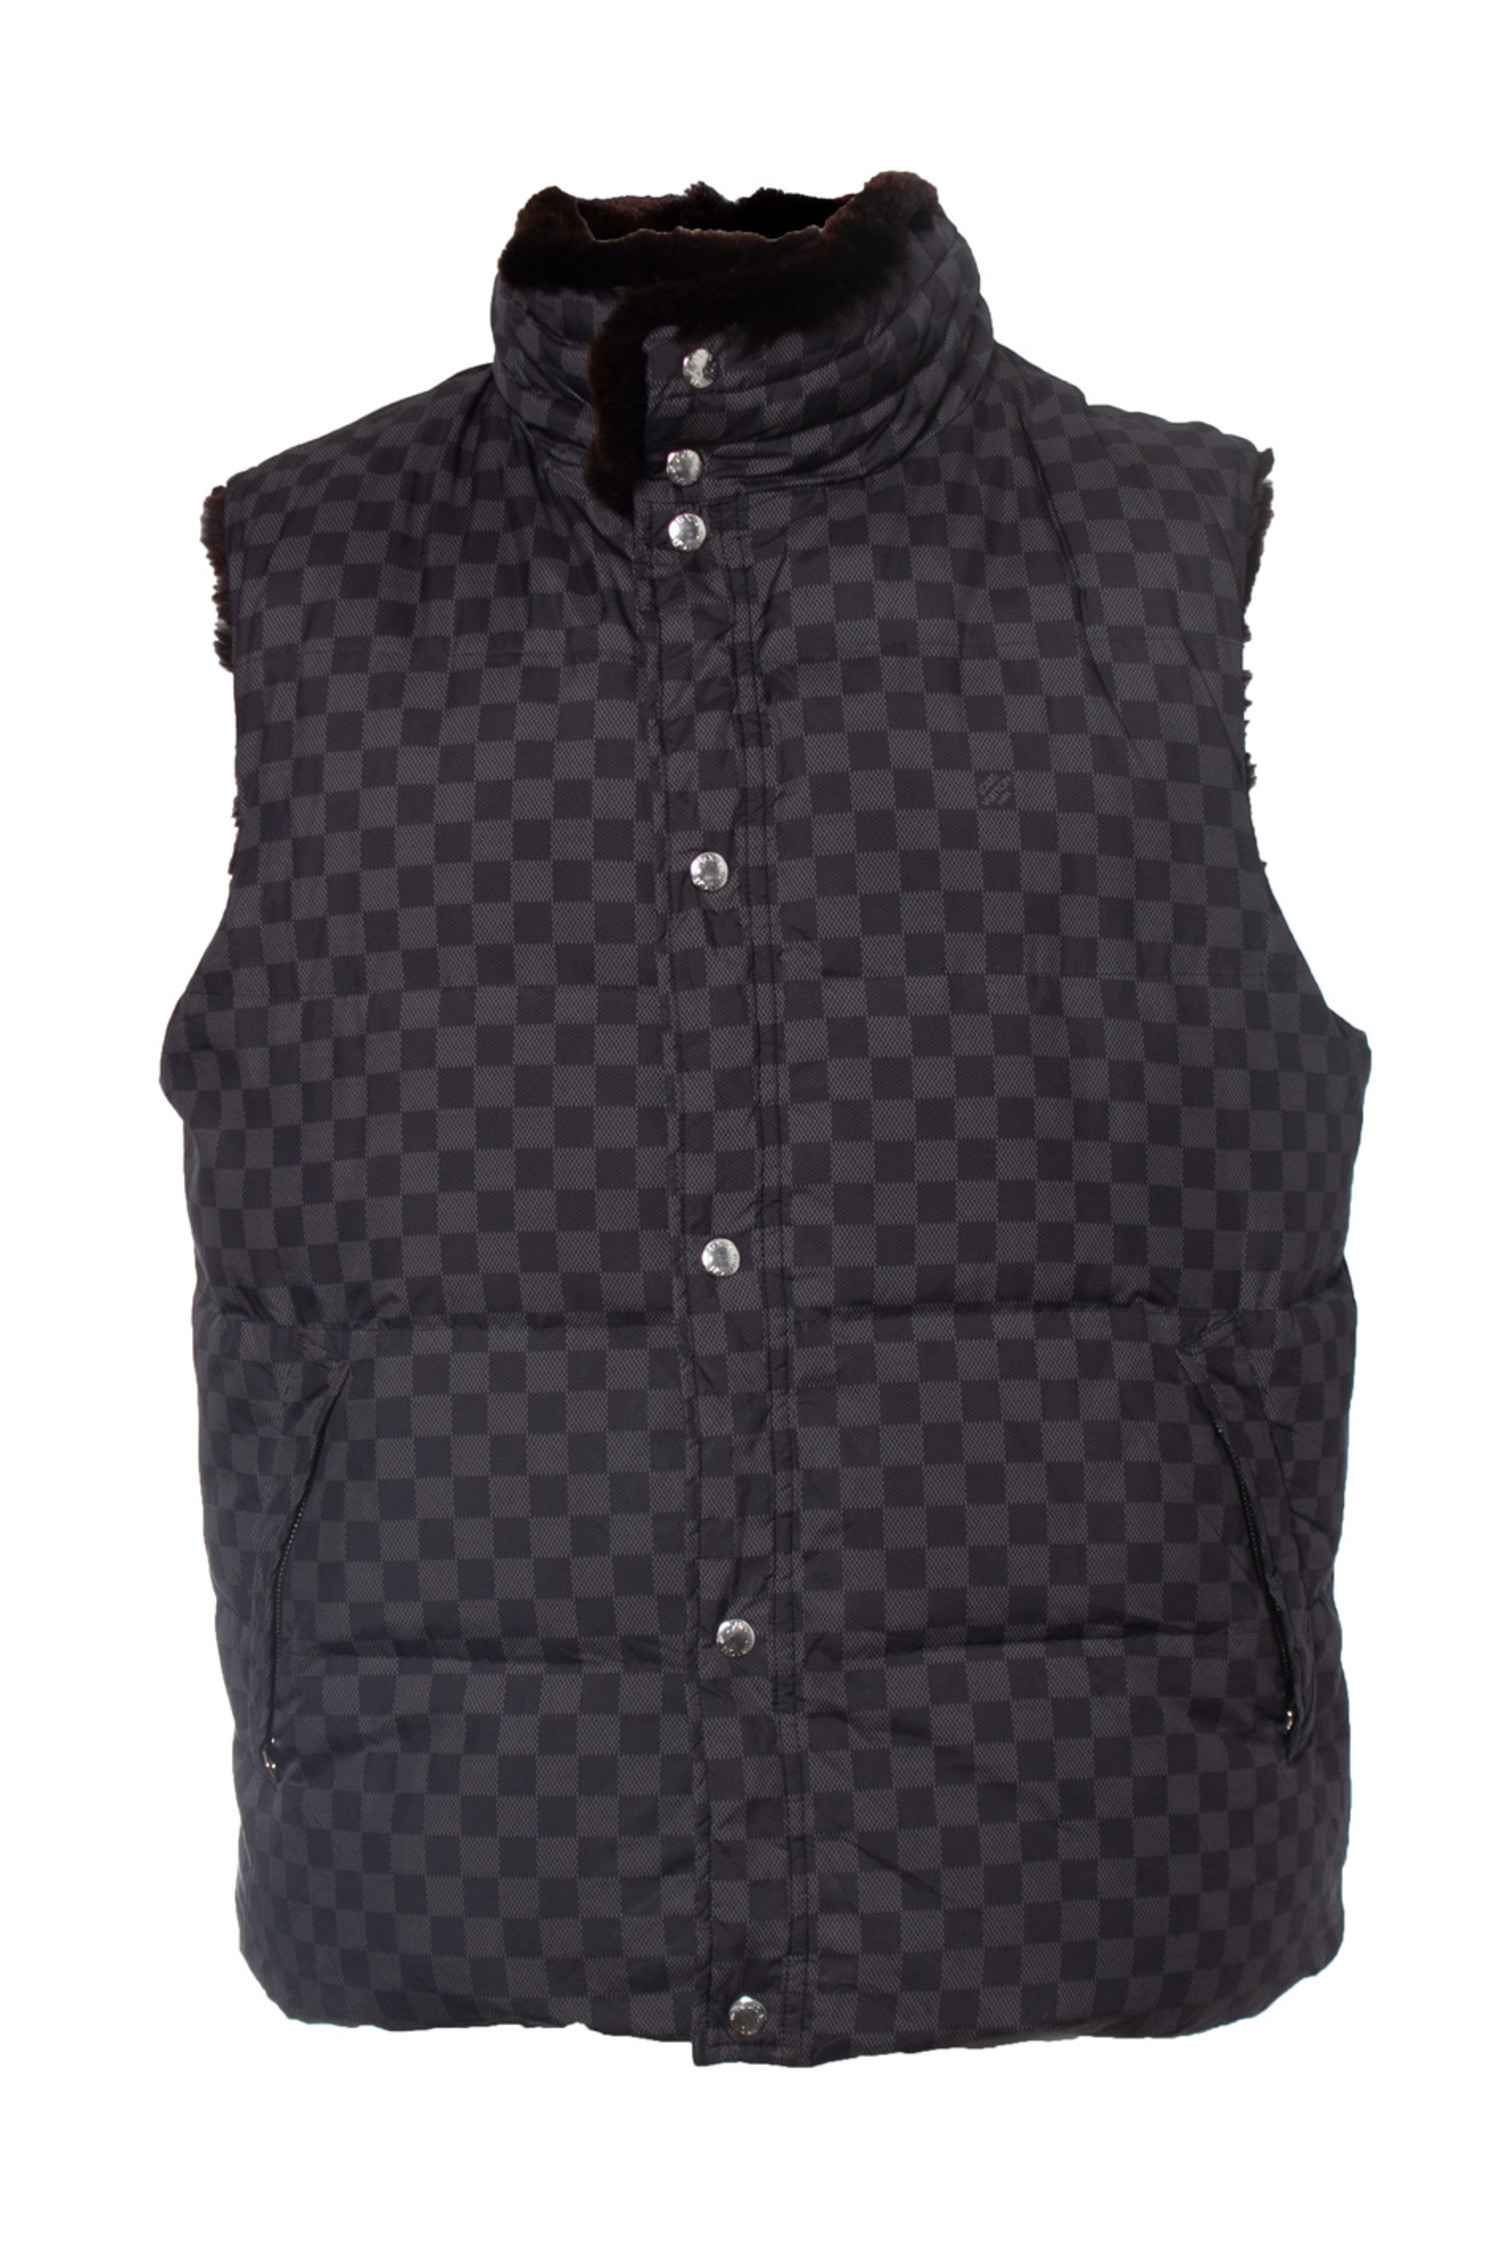 Louis Vuitton Damier Graphite Rabbit Fur Reversible Vest Medium 50